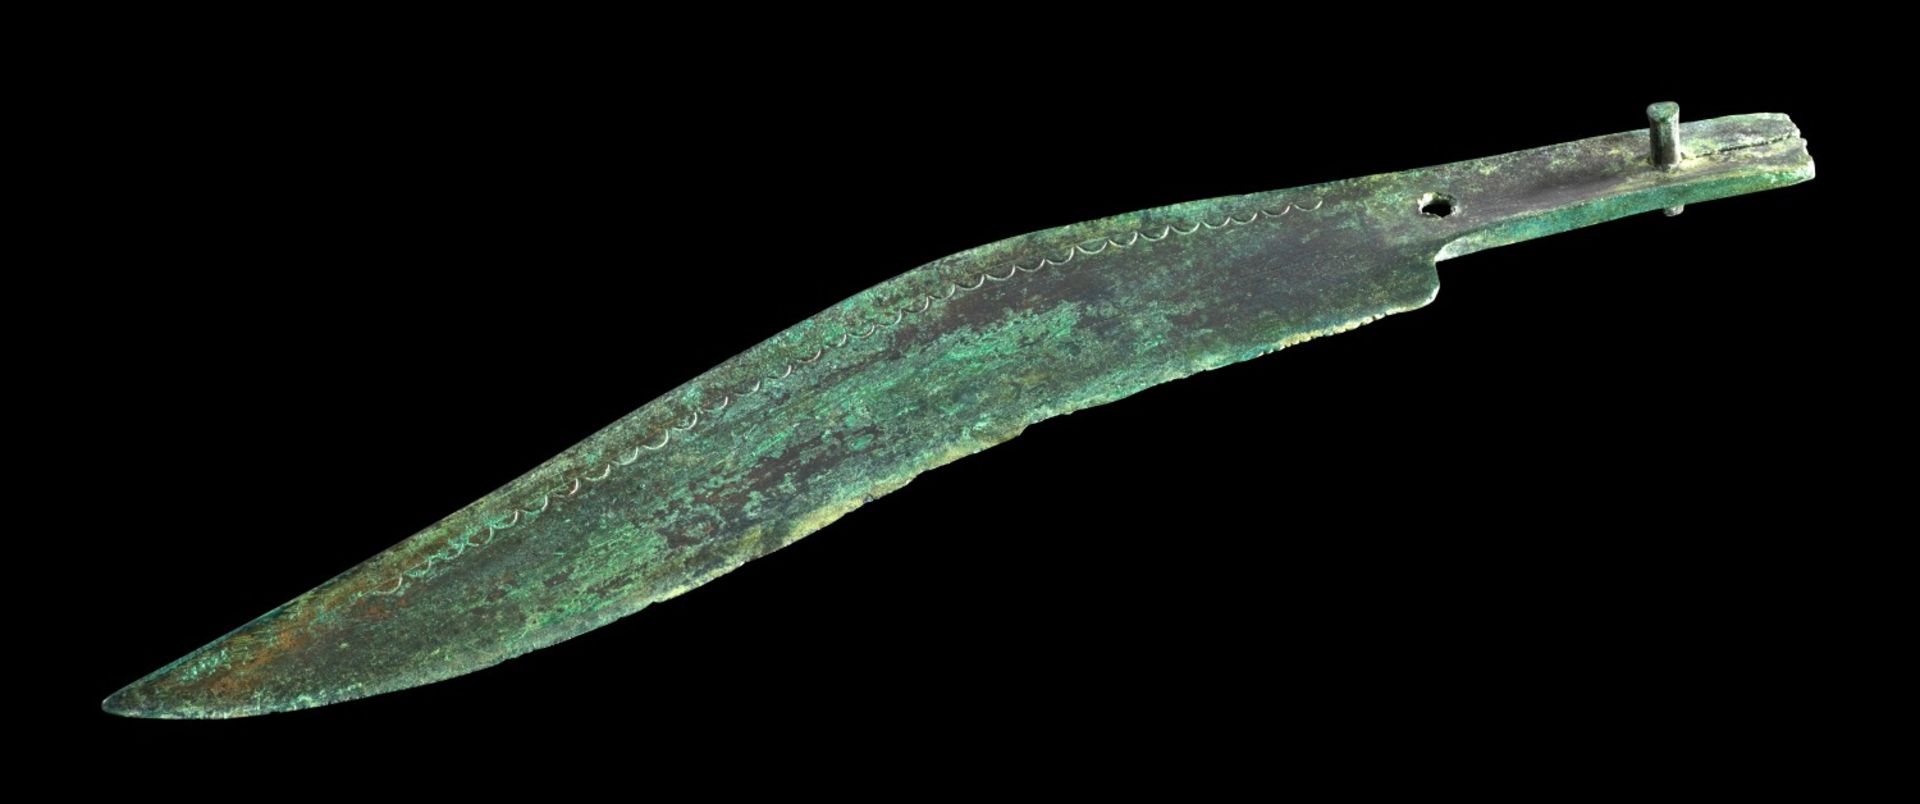 Bronzemesser. ca. 800 - 500 v. Chr. L 23cm. Bronzeguss. Sichelartig geschwungene Klinge, in der